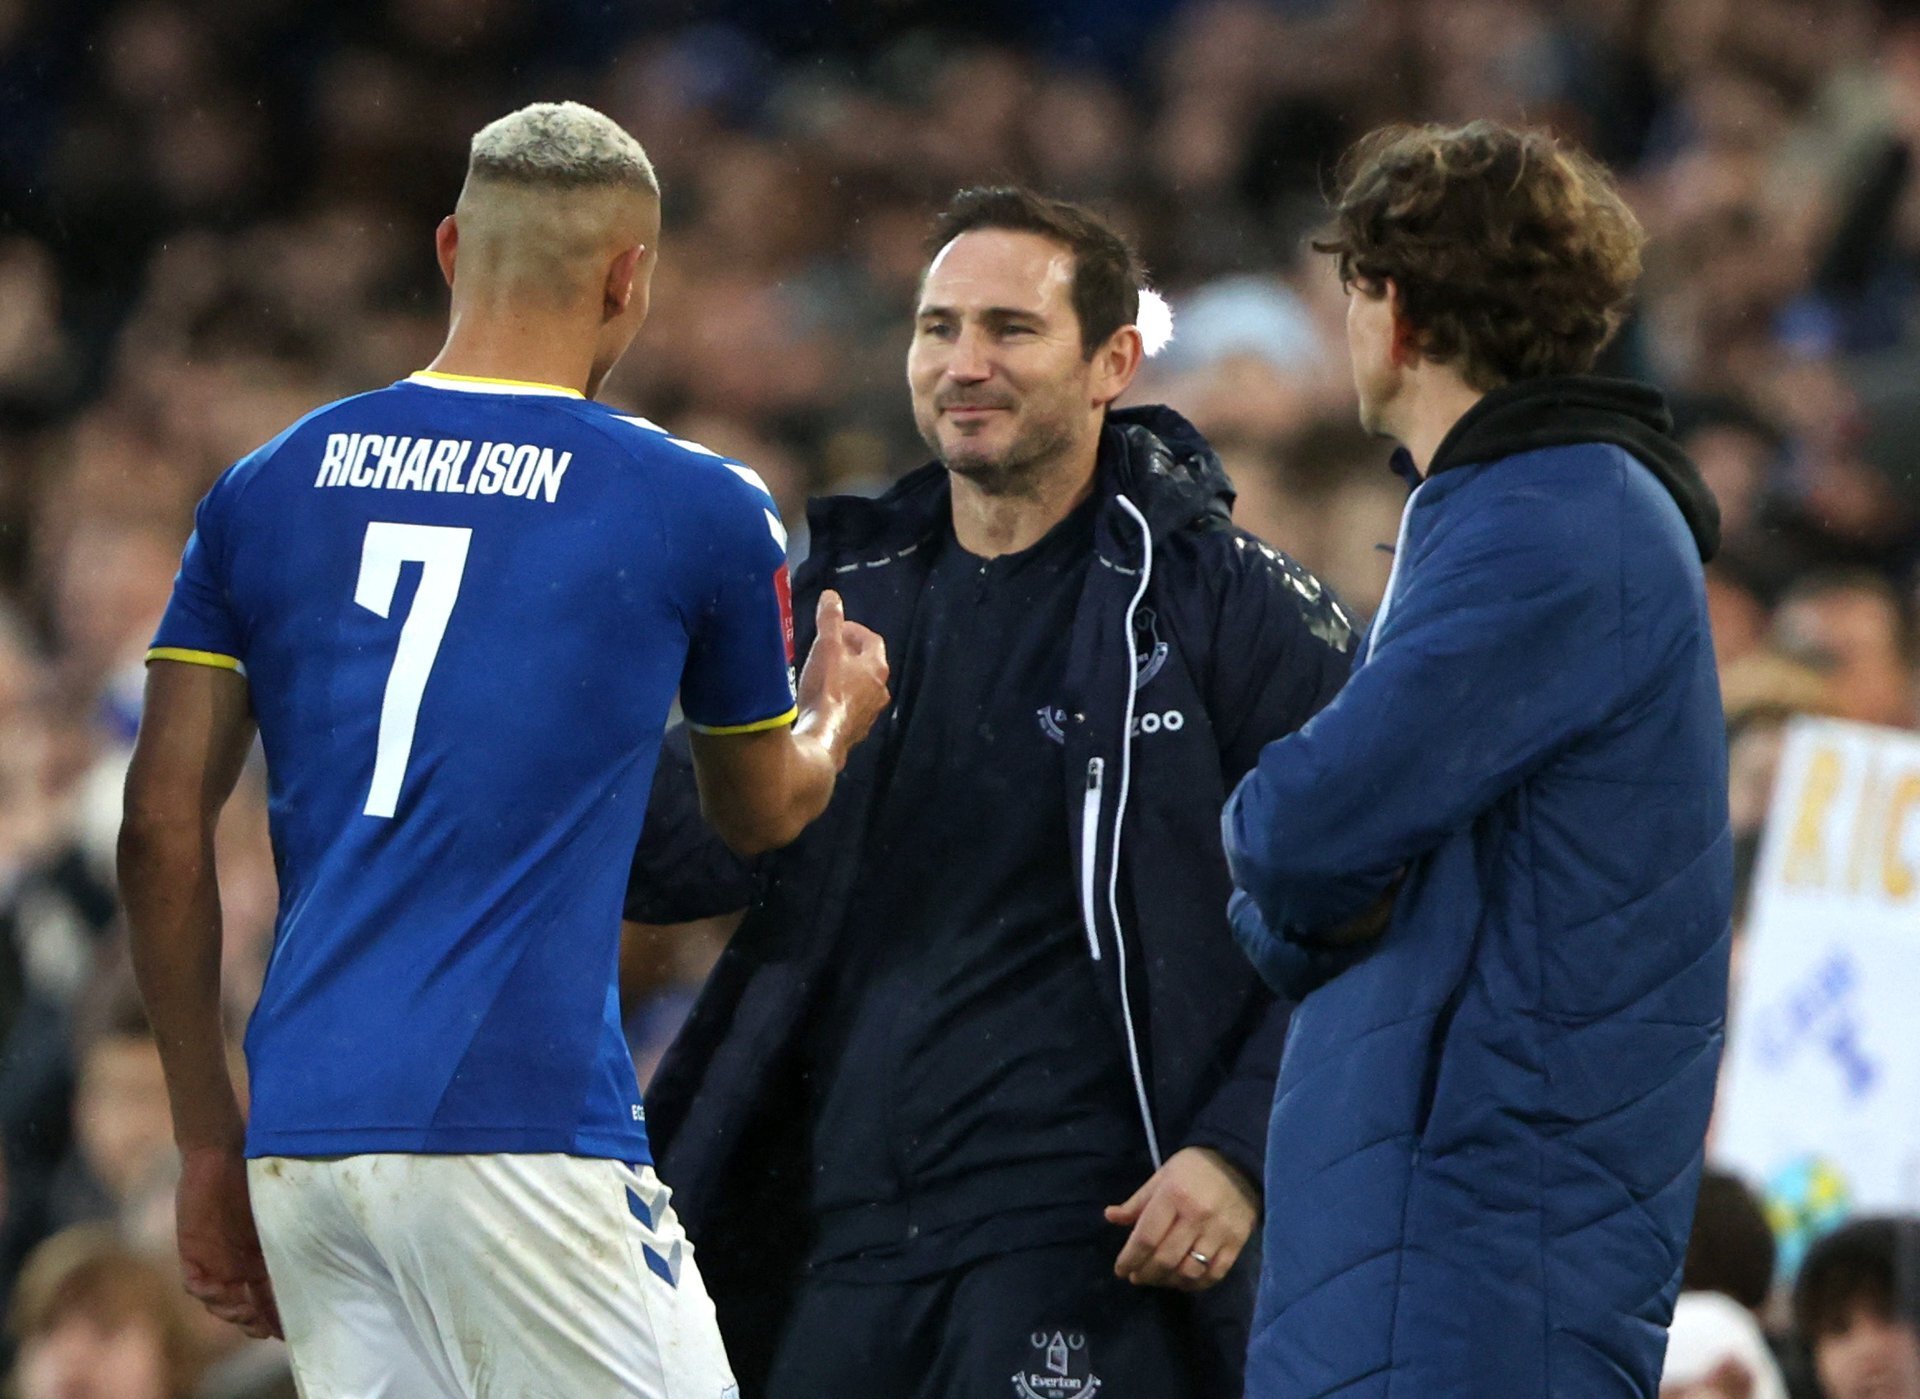 Phân tích về Everton - Frank Lampard và các cầu thủ khiến đội khách mắc sai lầm lớn khi Richarlison rời đi trong nước mắt (Phần 2)